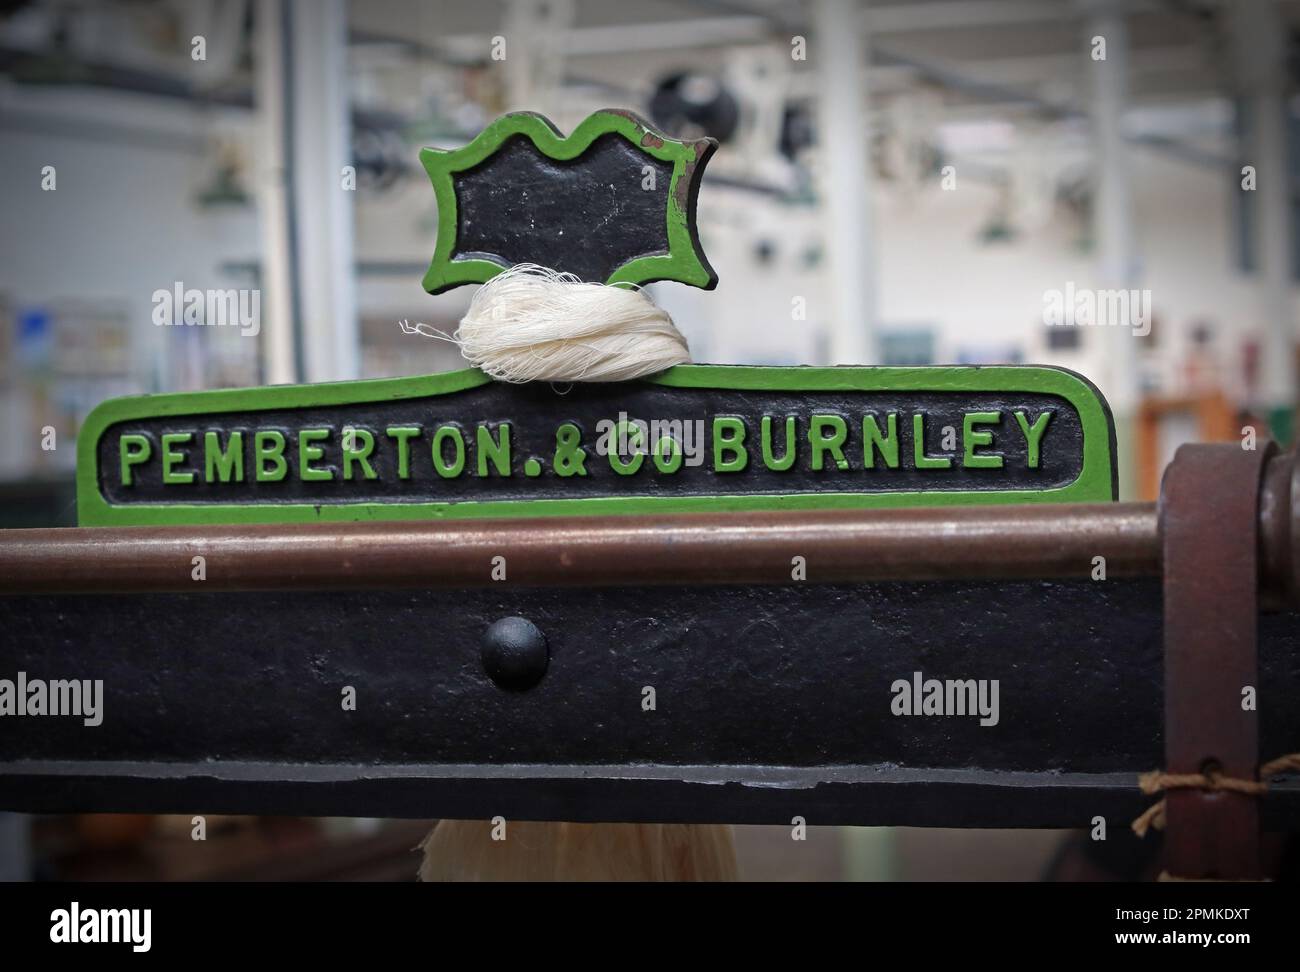 Macchina per la lavorazione e la lavorazione del cotone, di Pemberton & Co, Burnley Foto Stock